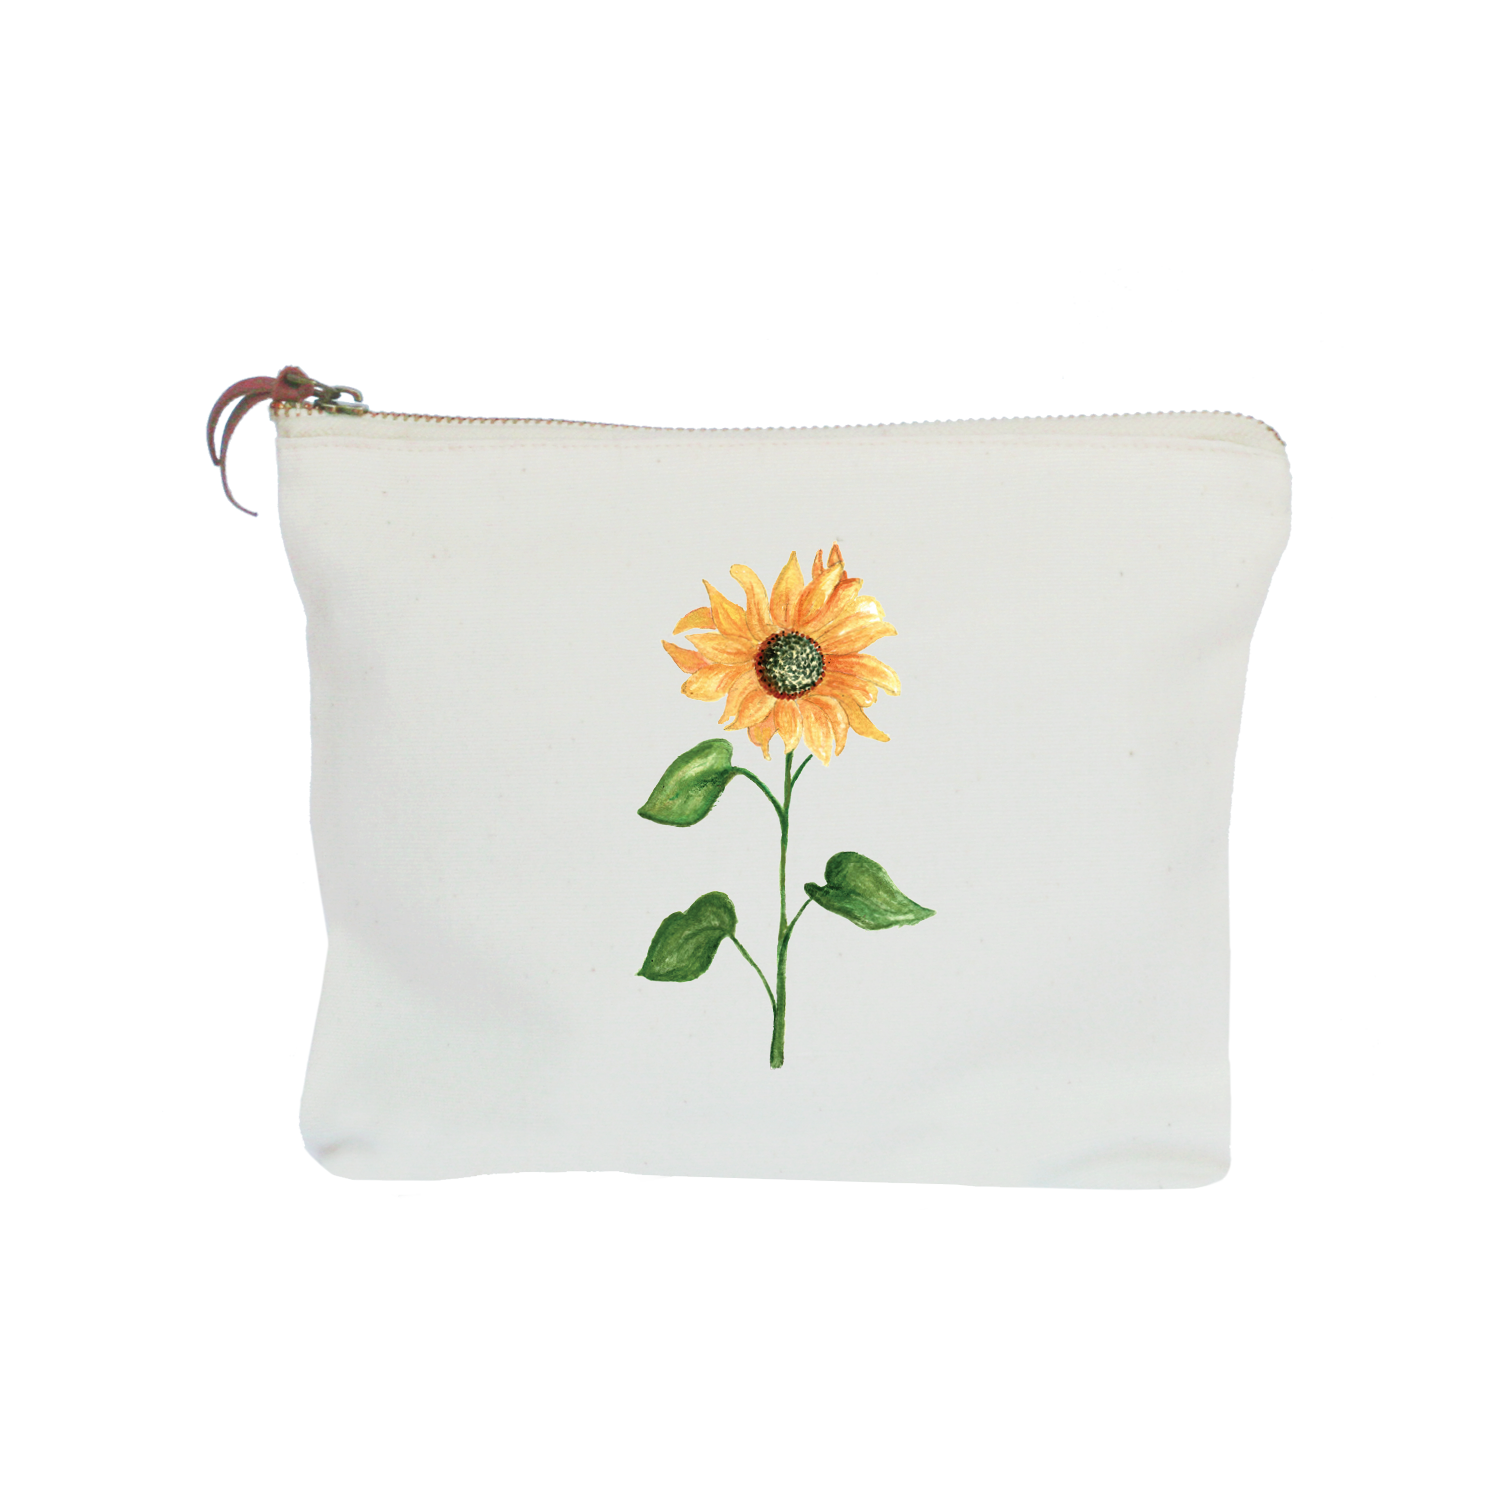 sunflower zipper pouch